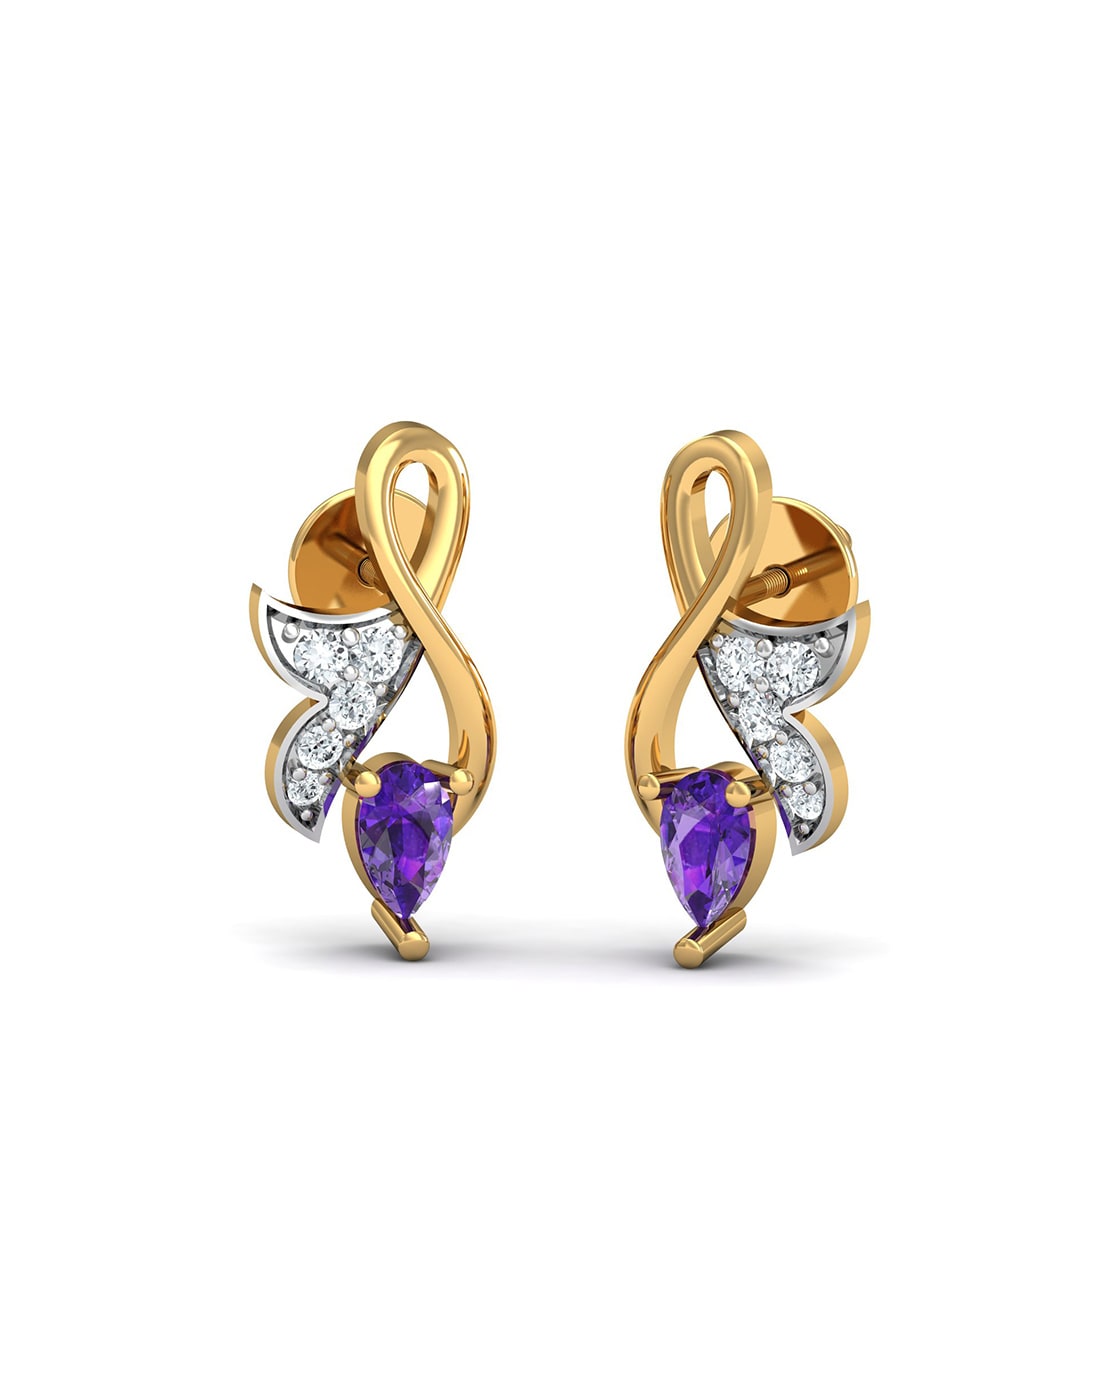 Buy Circular Purple Stone Silver Plated Earrings onlineKaragiri